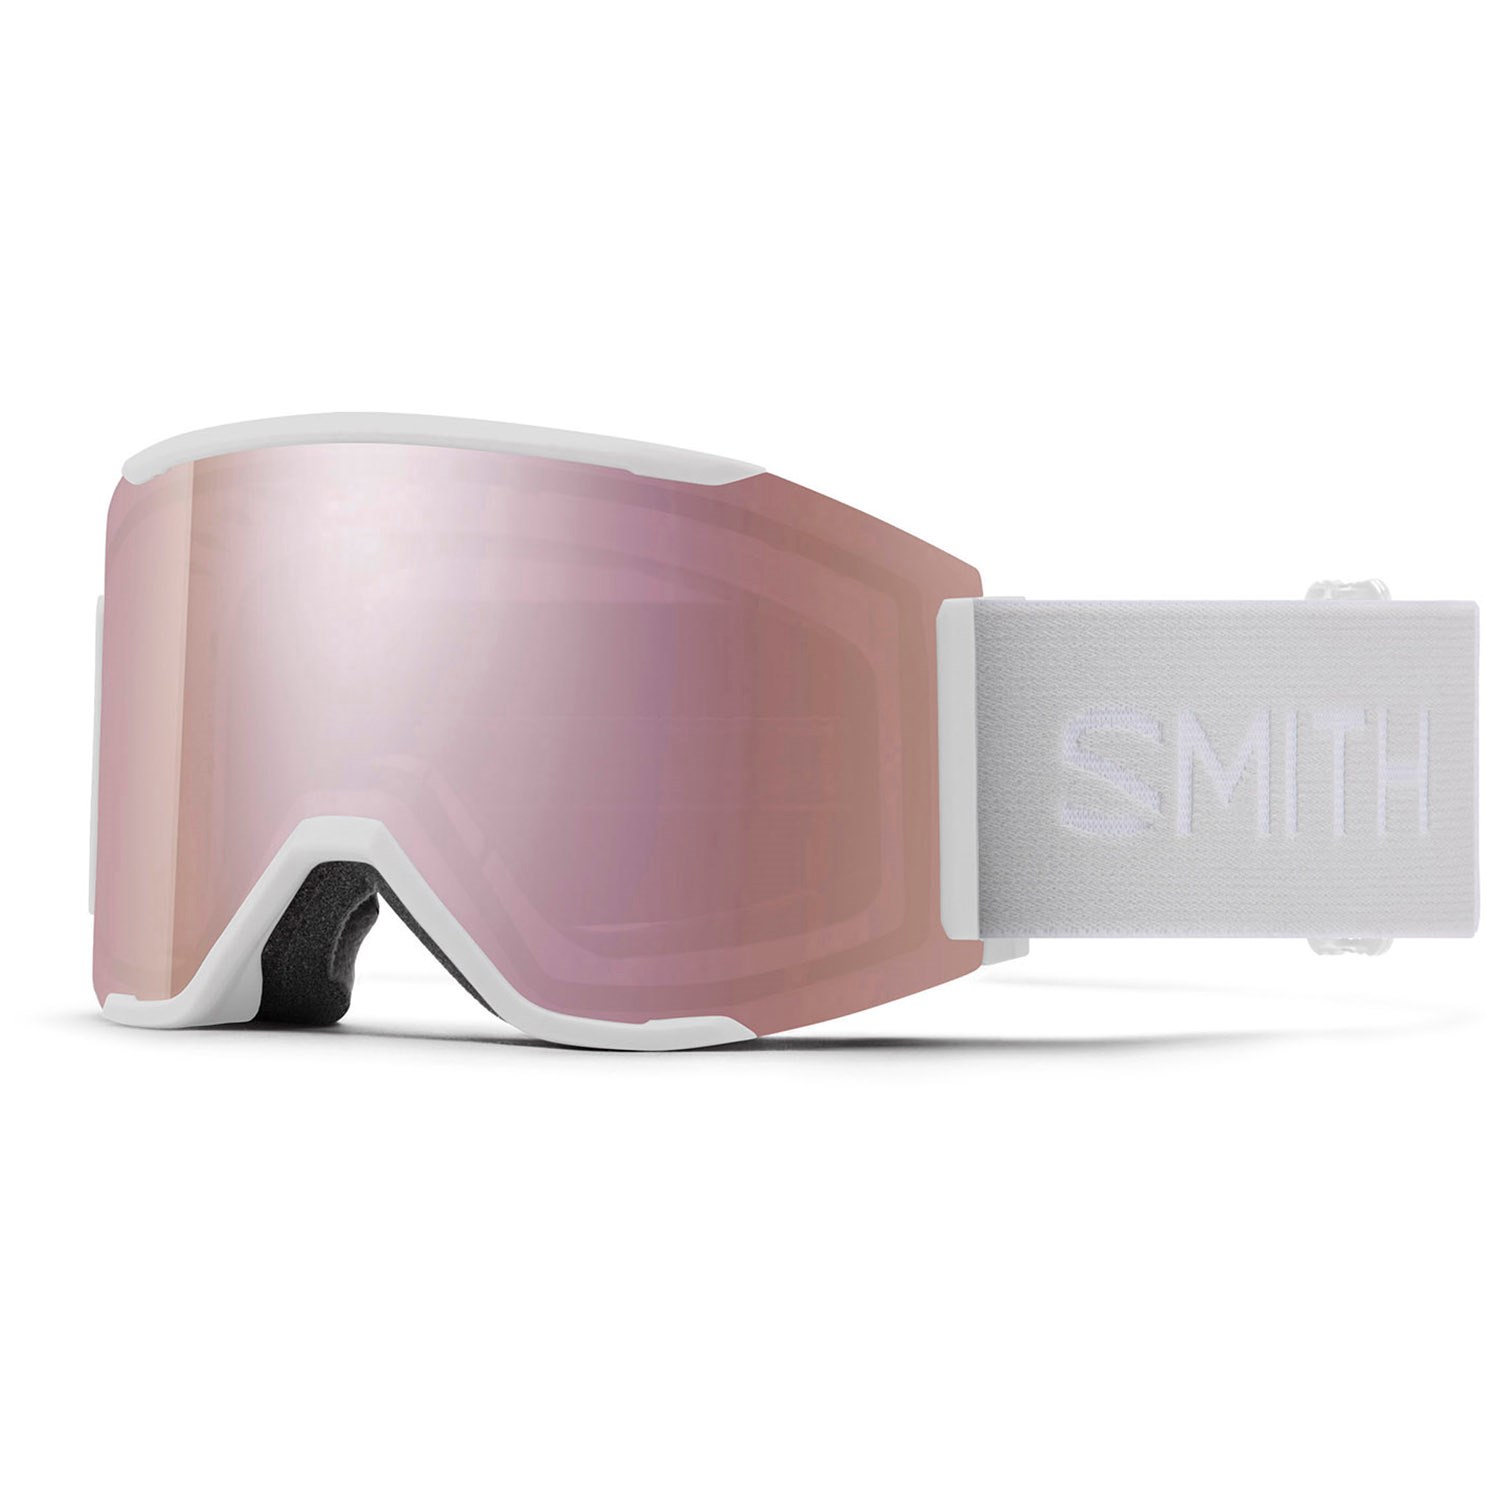 Лыжные очки Smith Squad MAG Low Bridge Fit, белый